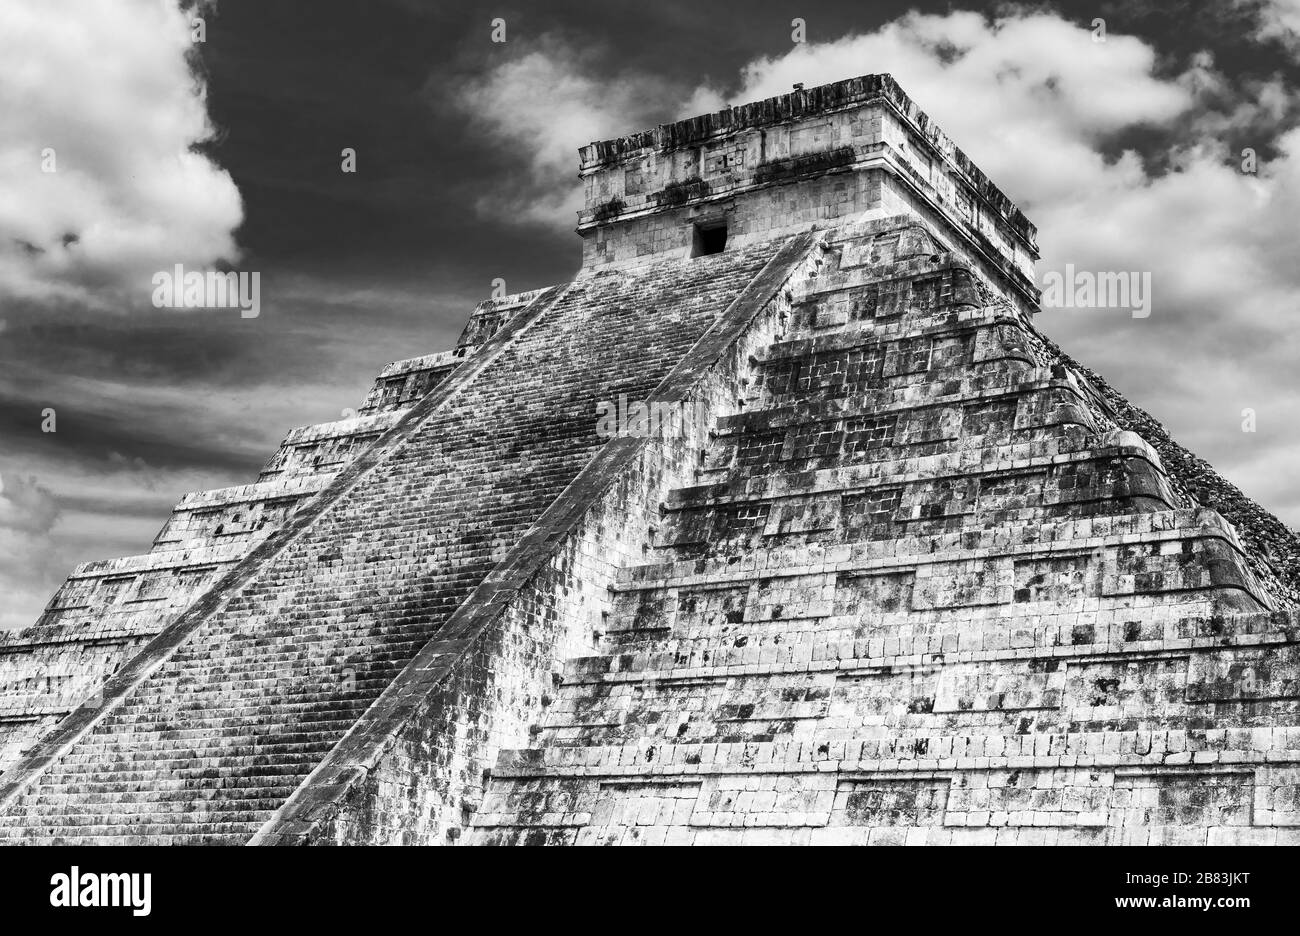 Die Maya-Pyramide von Kukulkan oder El Castillo in Schwarzweiß in der Nähe von Merida und Cancun, Yucatan-Halbinsel, Mexiko. Stockfoto